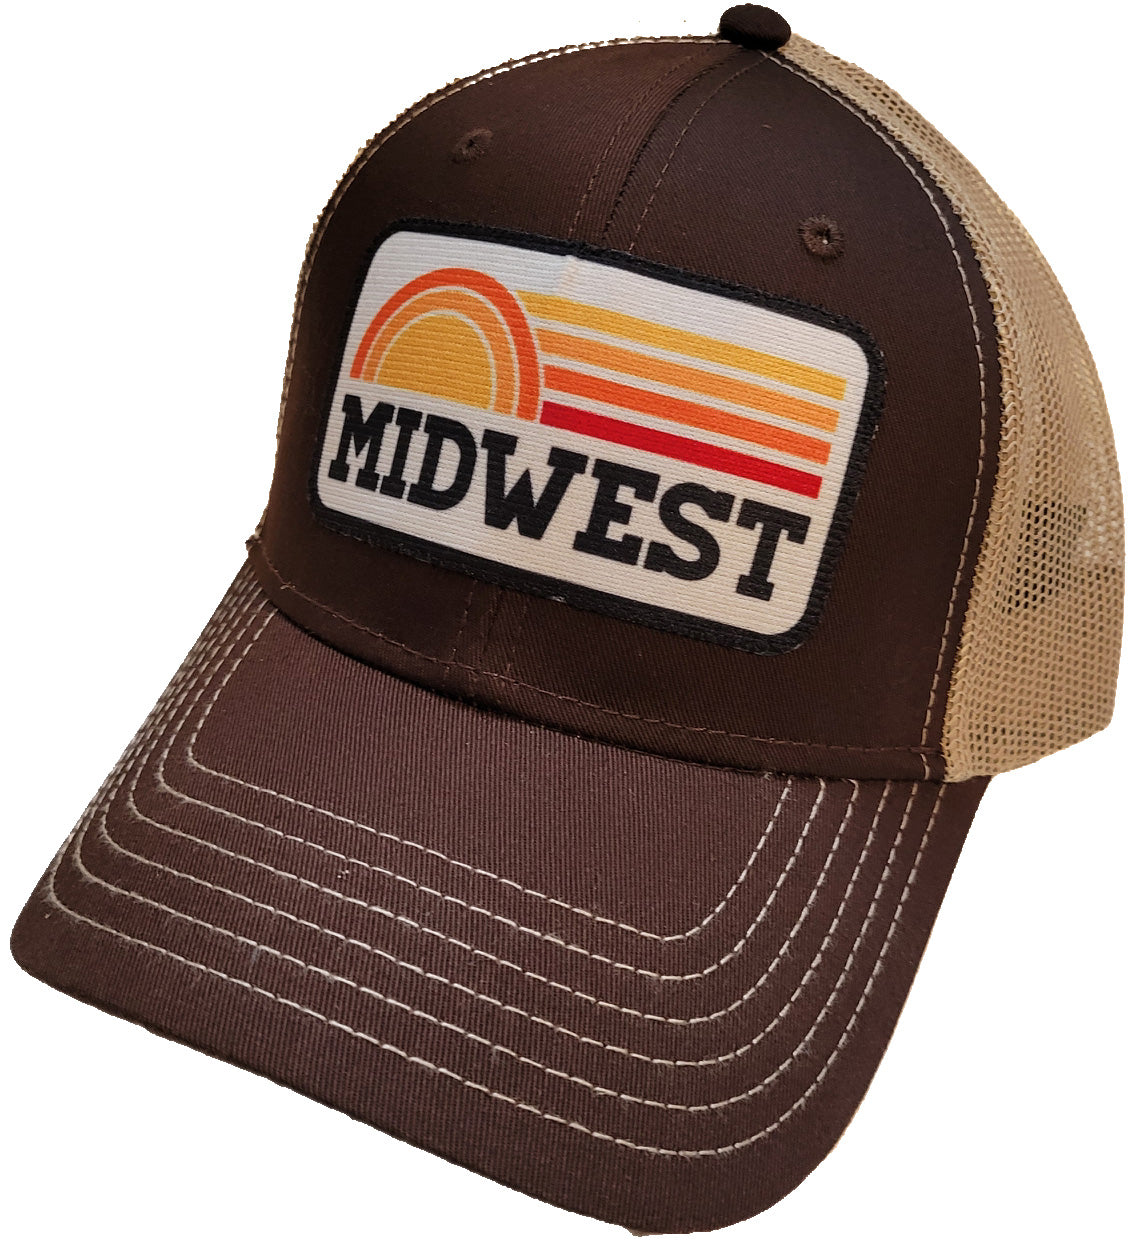 Midwest Sunrise Hat